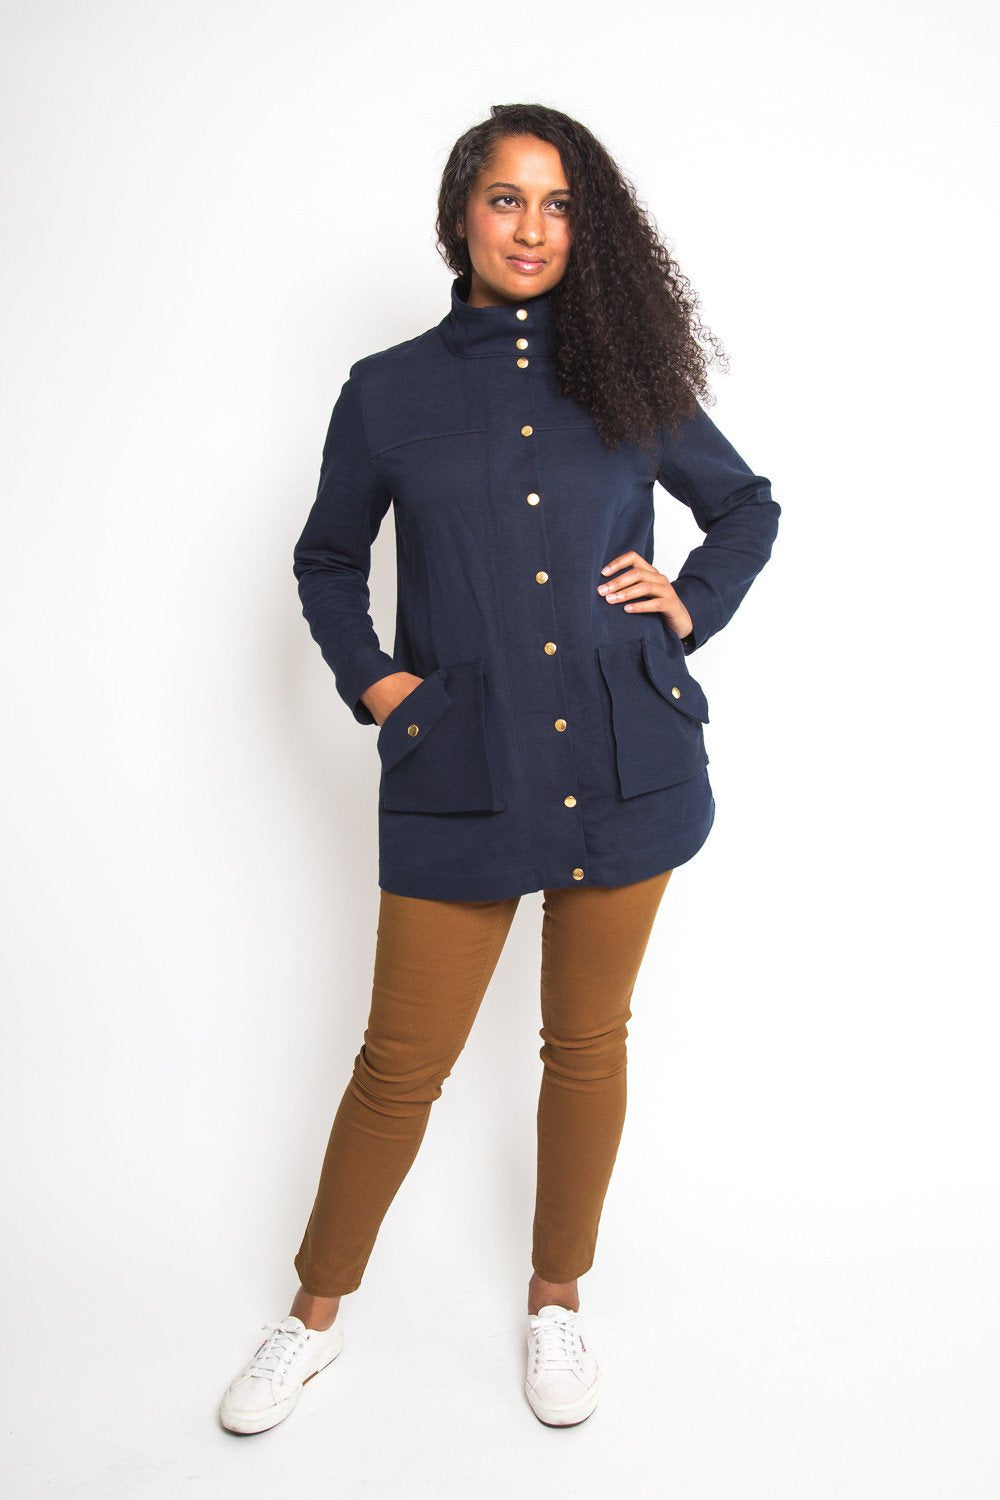 Kelly Anorak Jacket Pattern | Core Fabrics